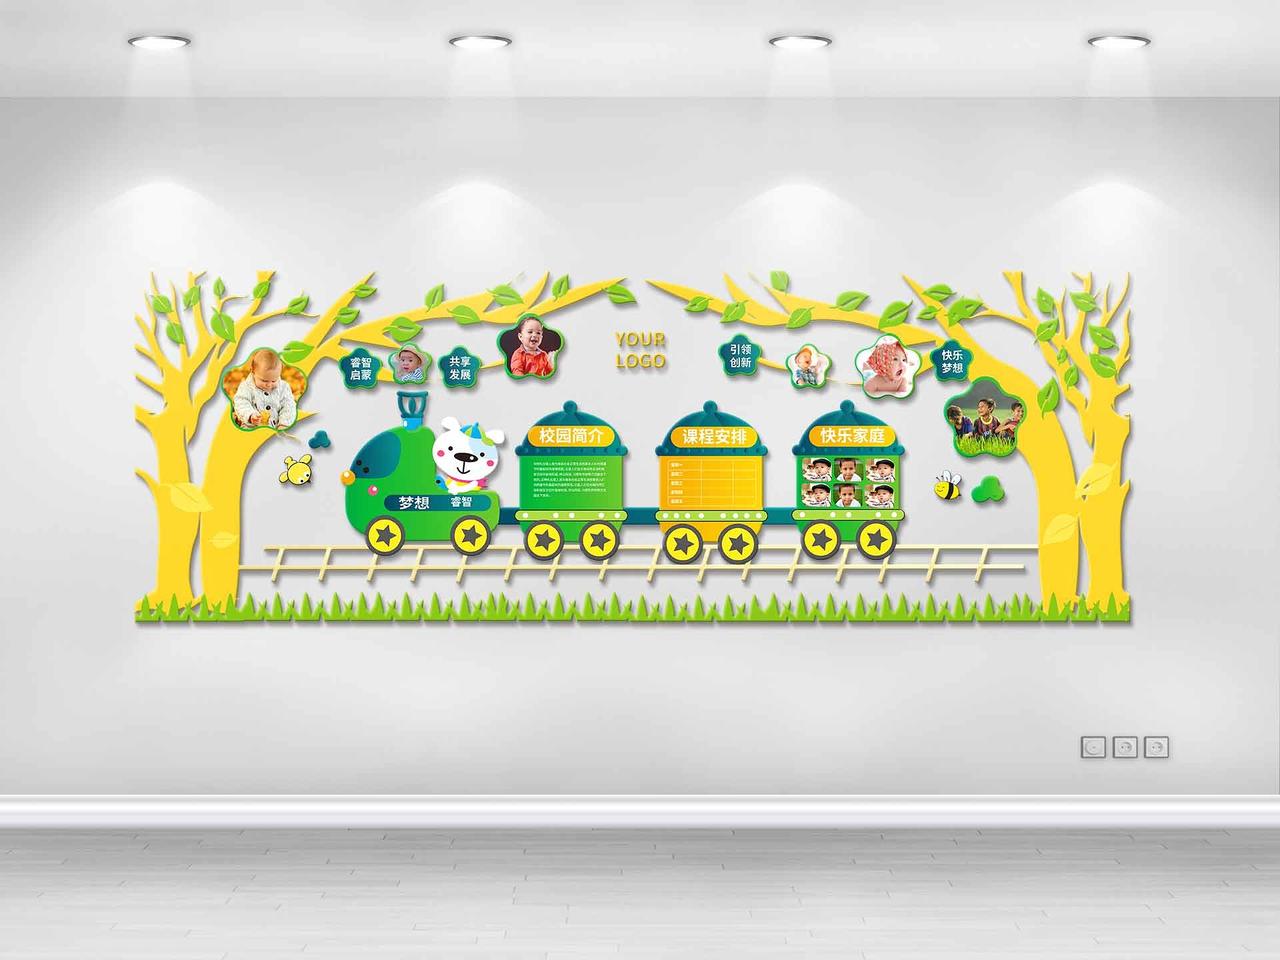 黄绿色卡通风格睿智启蒙共享发展幼儿园文化墙设计